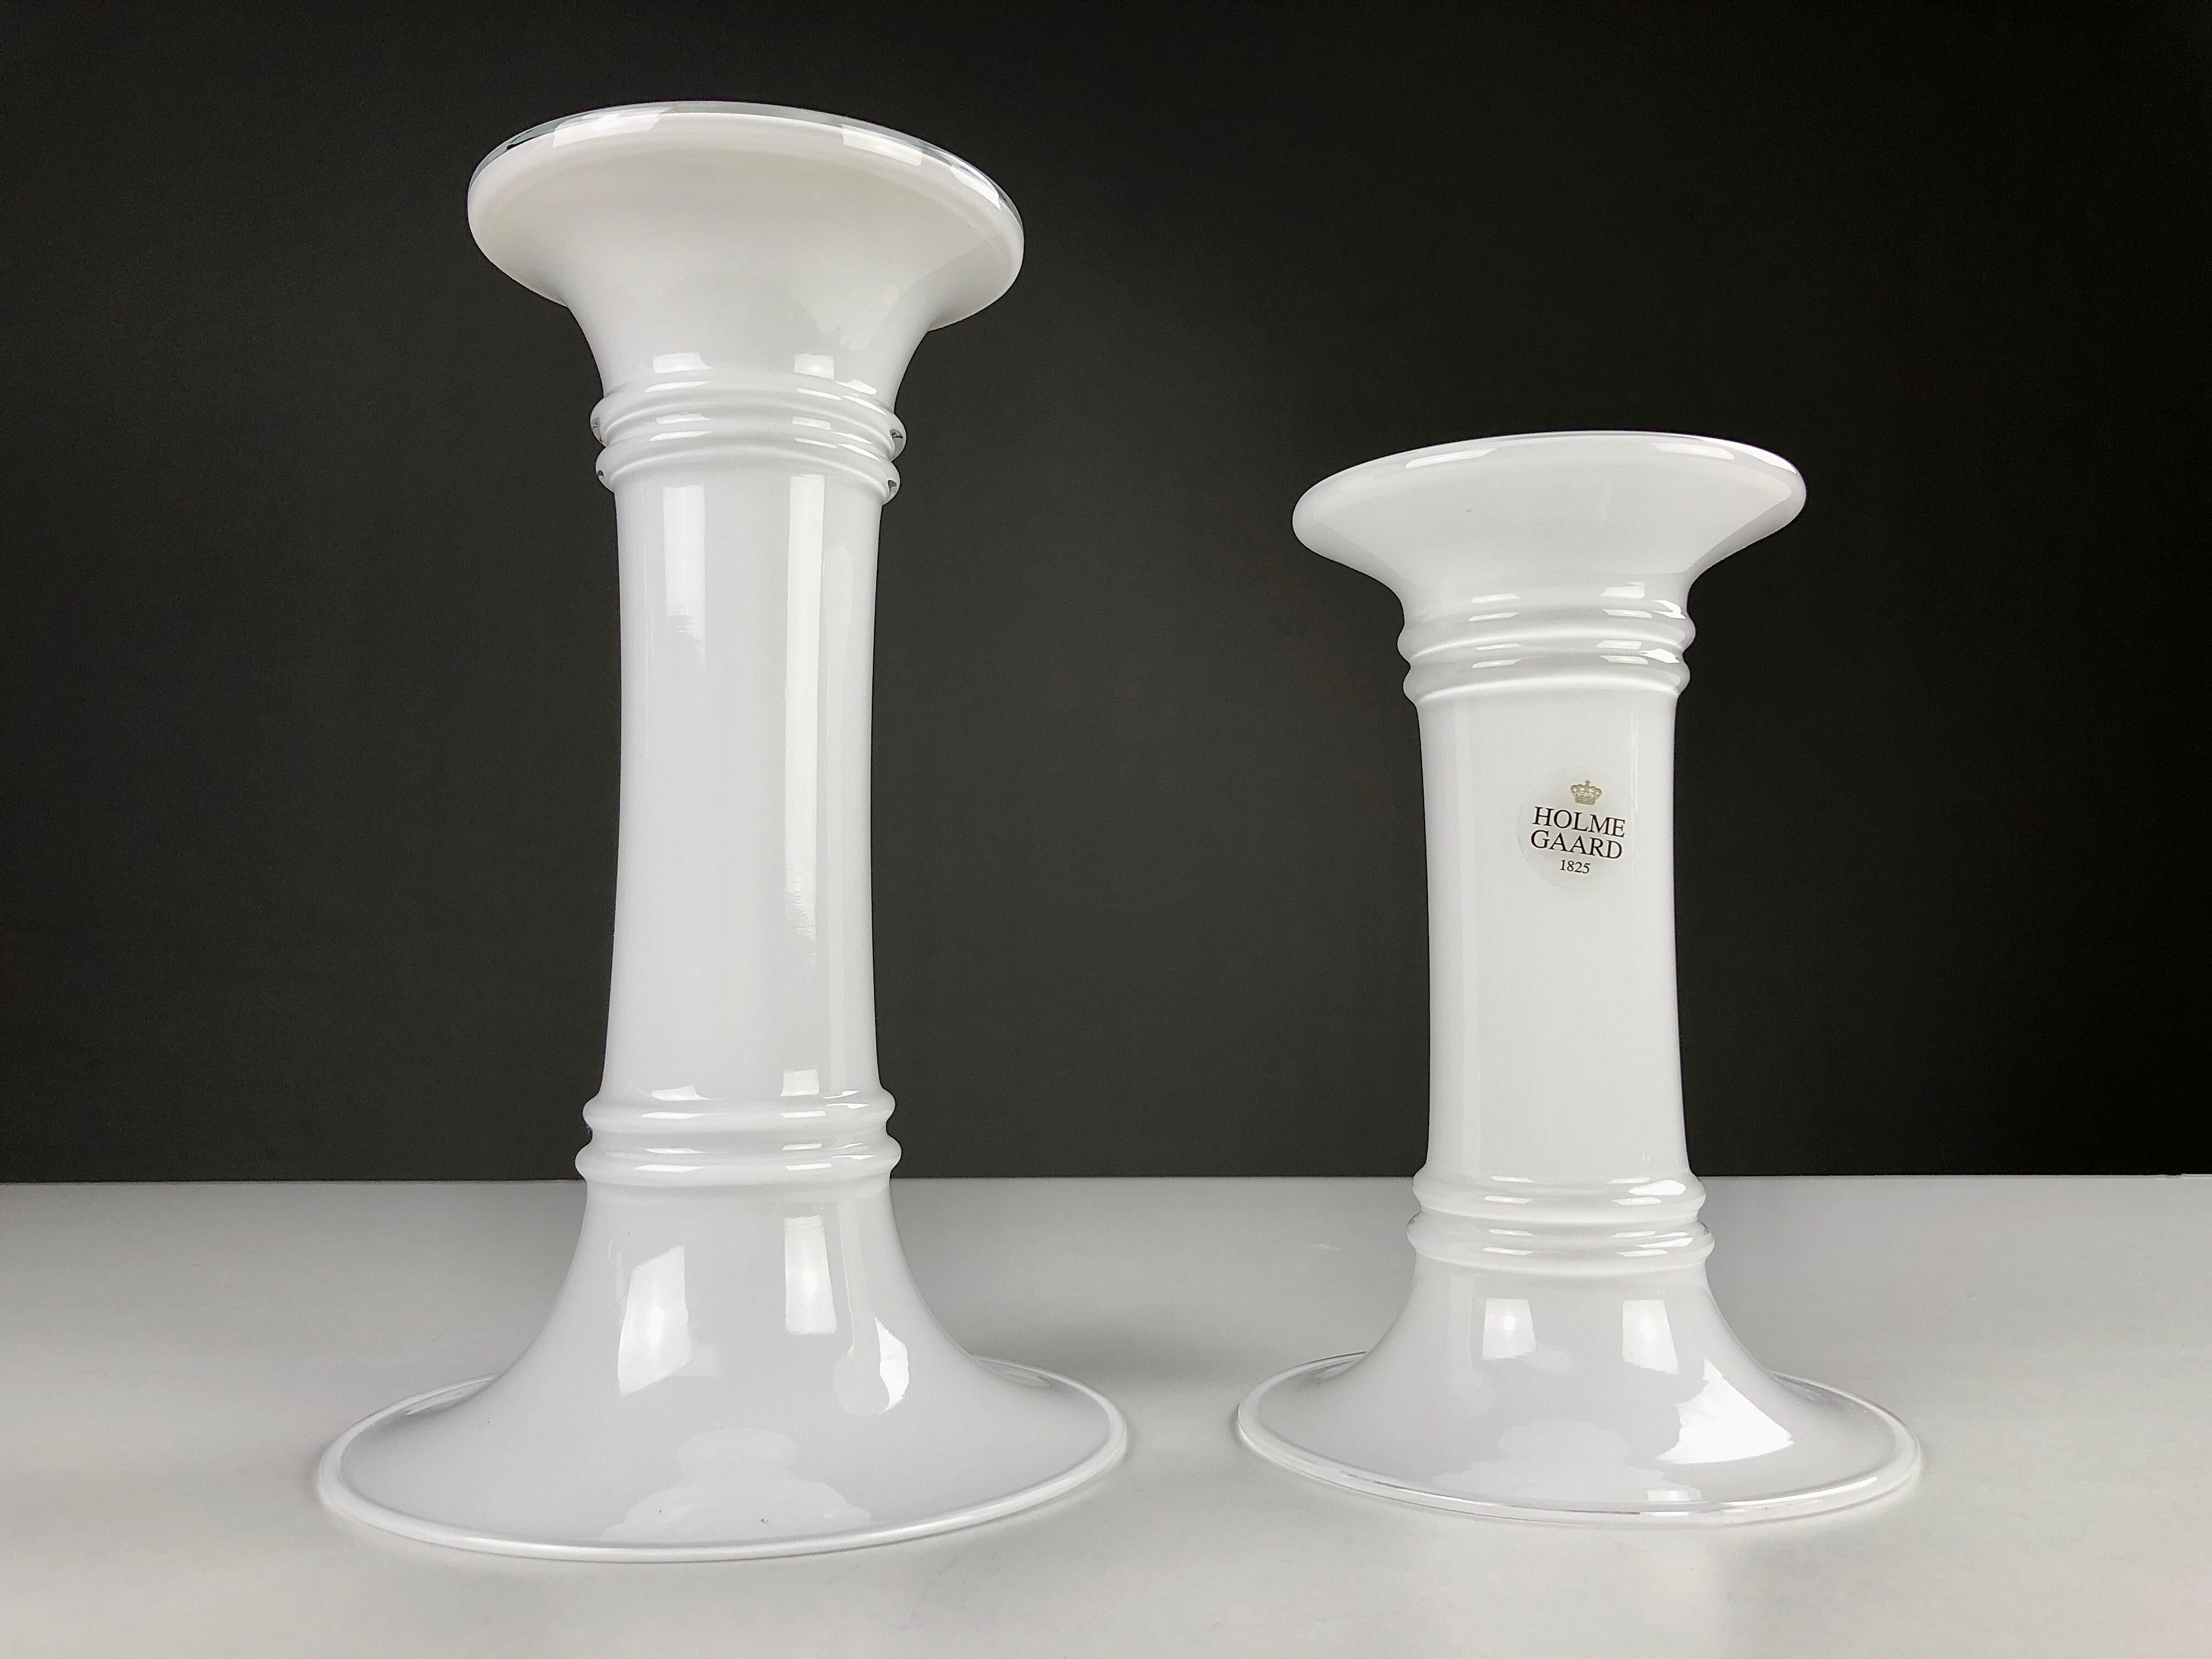 Vases danois combinés des années 1980 - Chandeliers de Michael Bang pour Holmegaard

Les deux vases Holmegaard au design flexible sont conçus pour être utilisés à la fois comme vases et comme chandeliers, en fonction de l'extrémité qui se trouve en